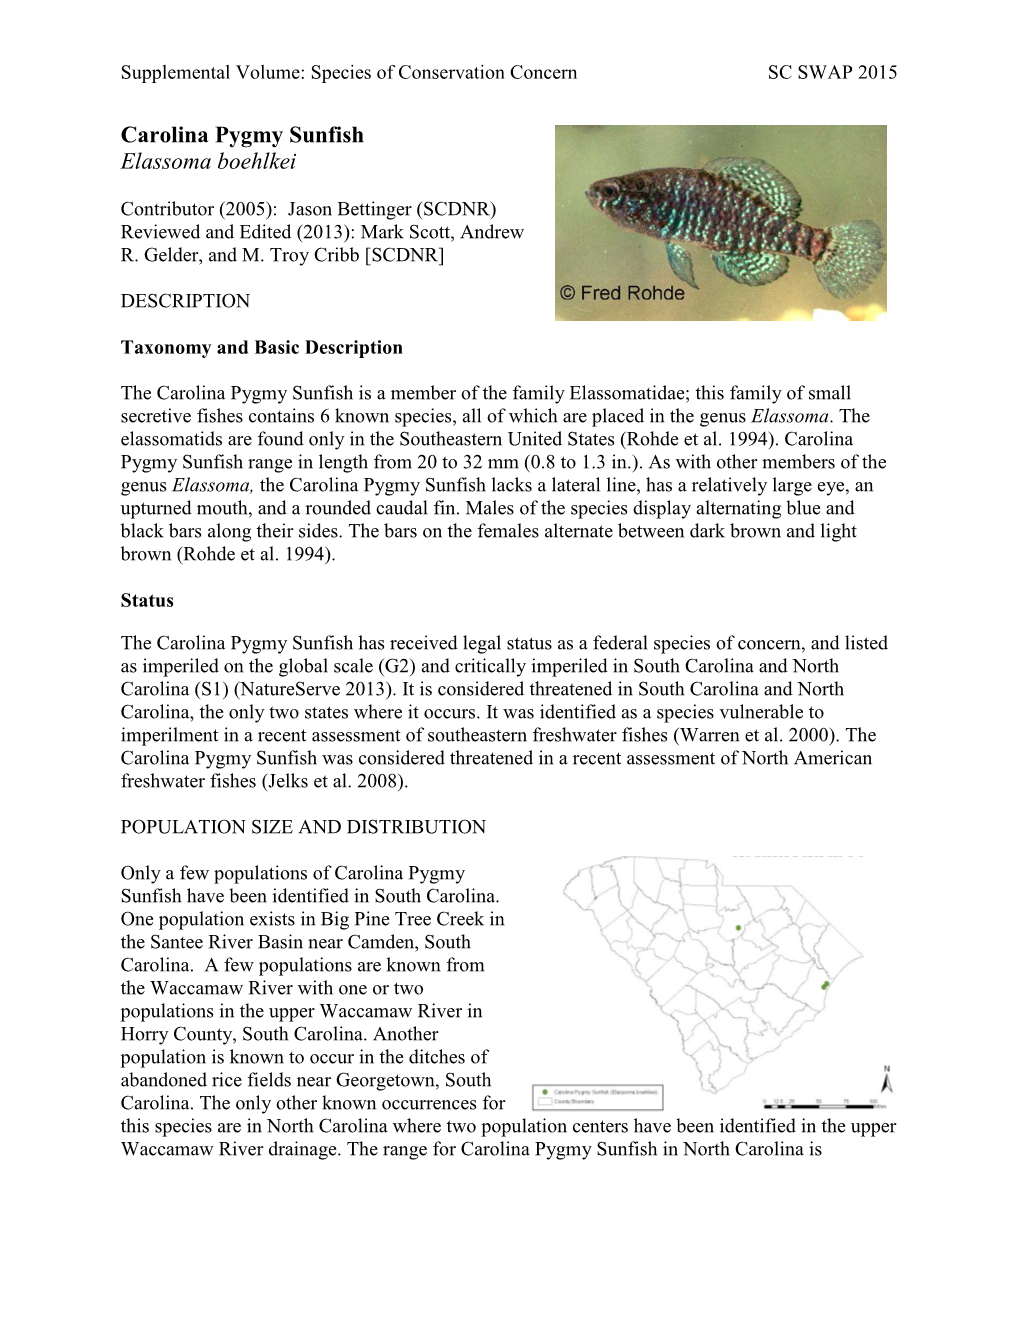 Carolina Pygmy Sunfish Elassoma Boehlkei